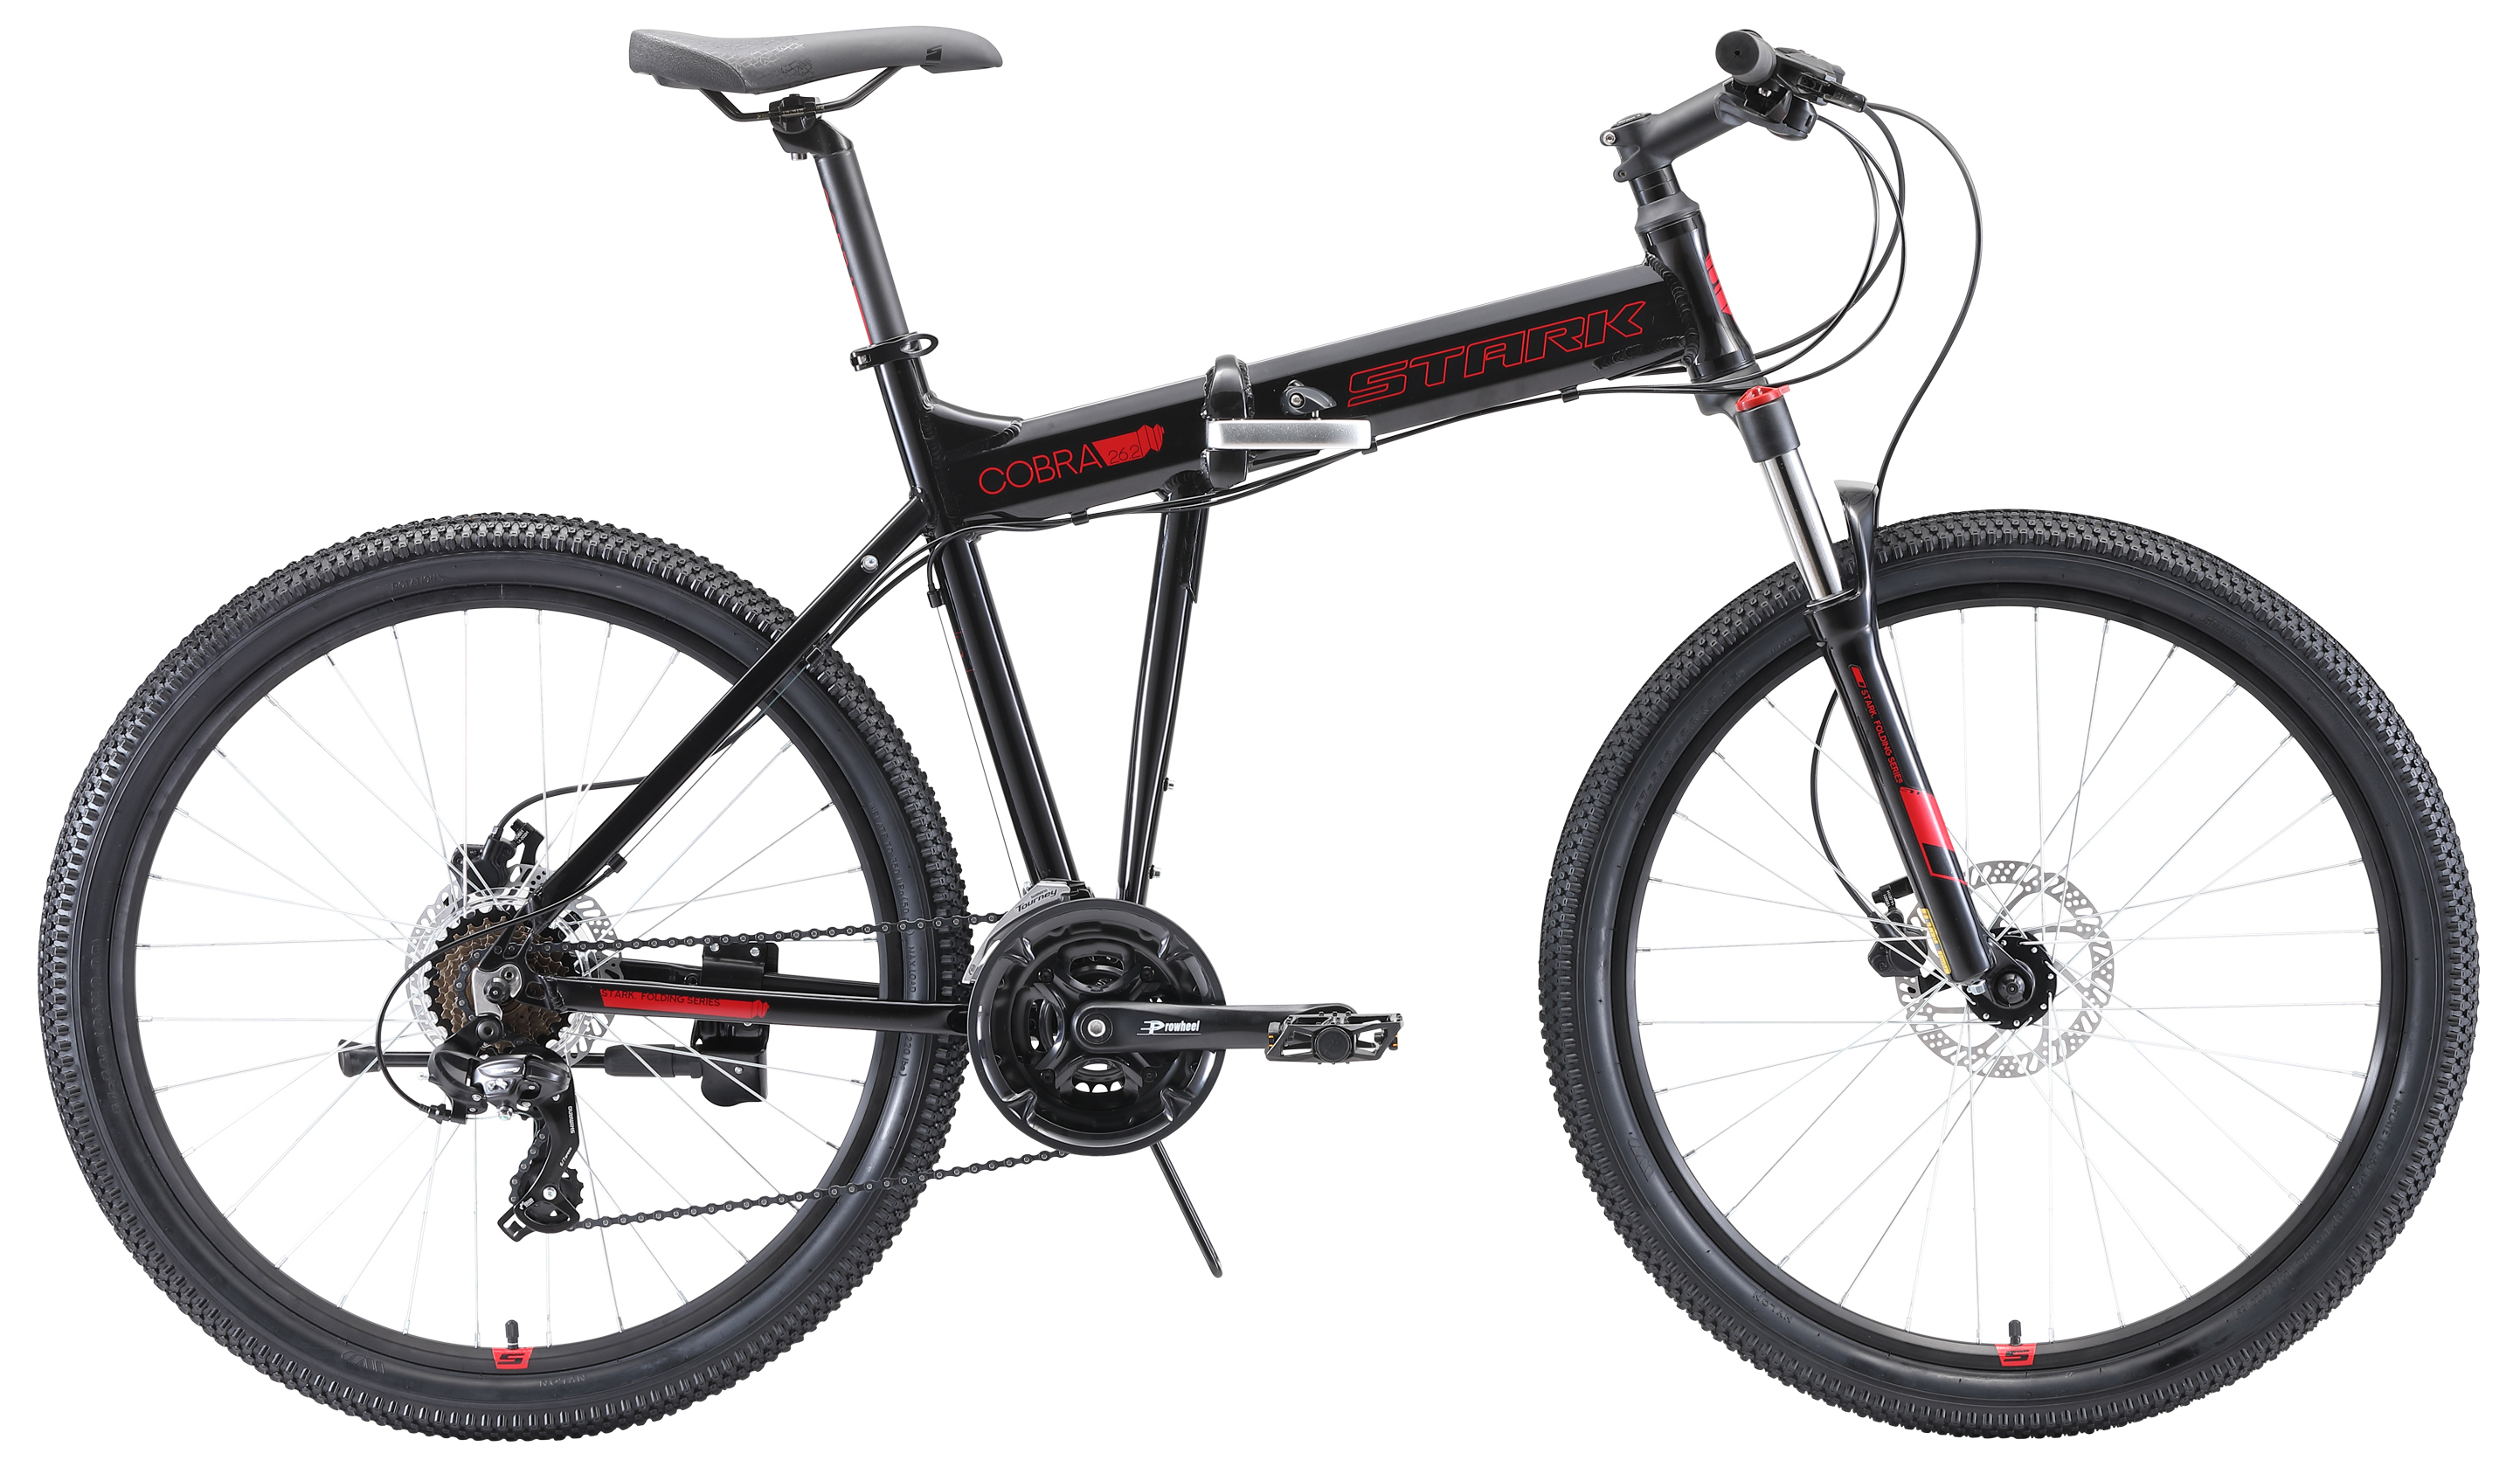  Отзывы о Складном велосипеде Stark Cobra 26.2 HD 2020